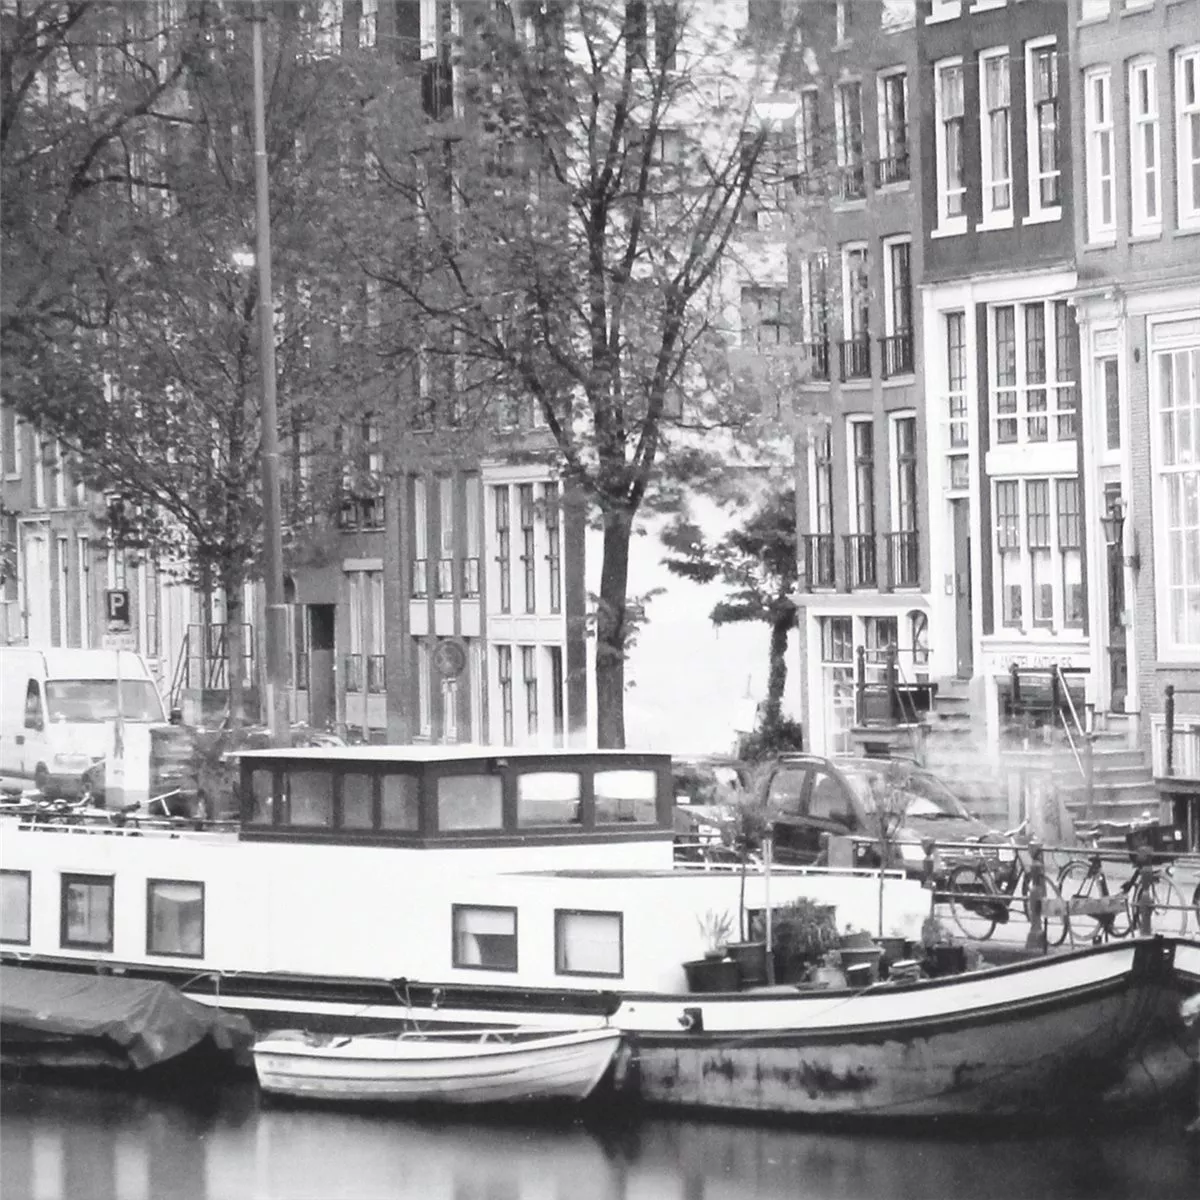 Amsterdam Dekoráció Üveghatású Csempe 20x50cm